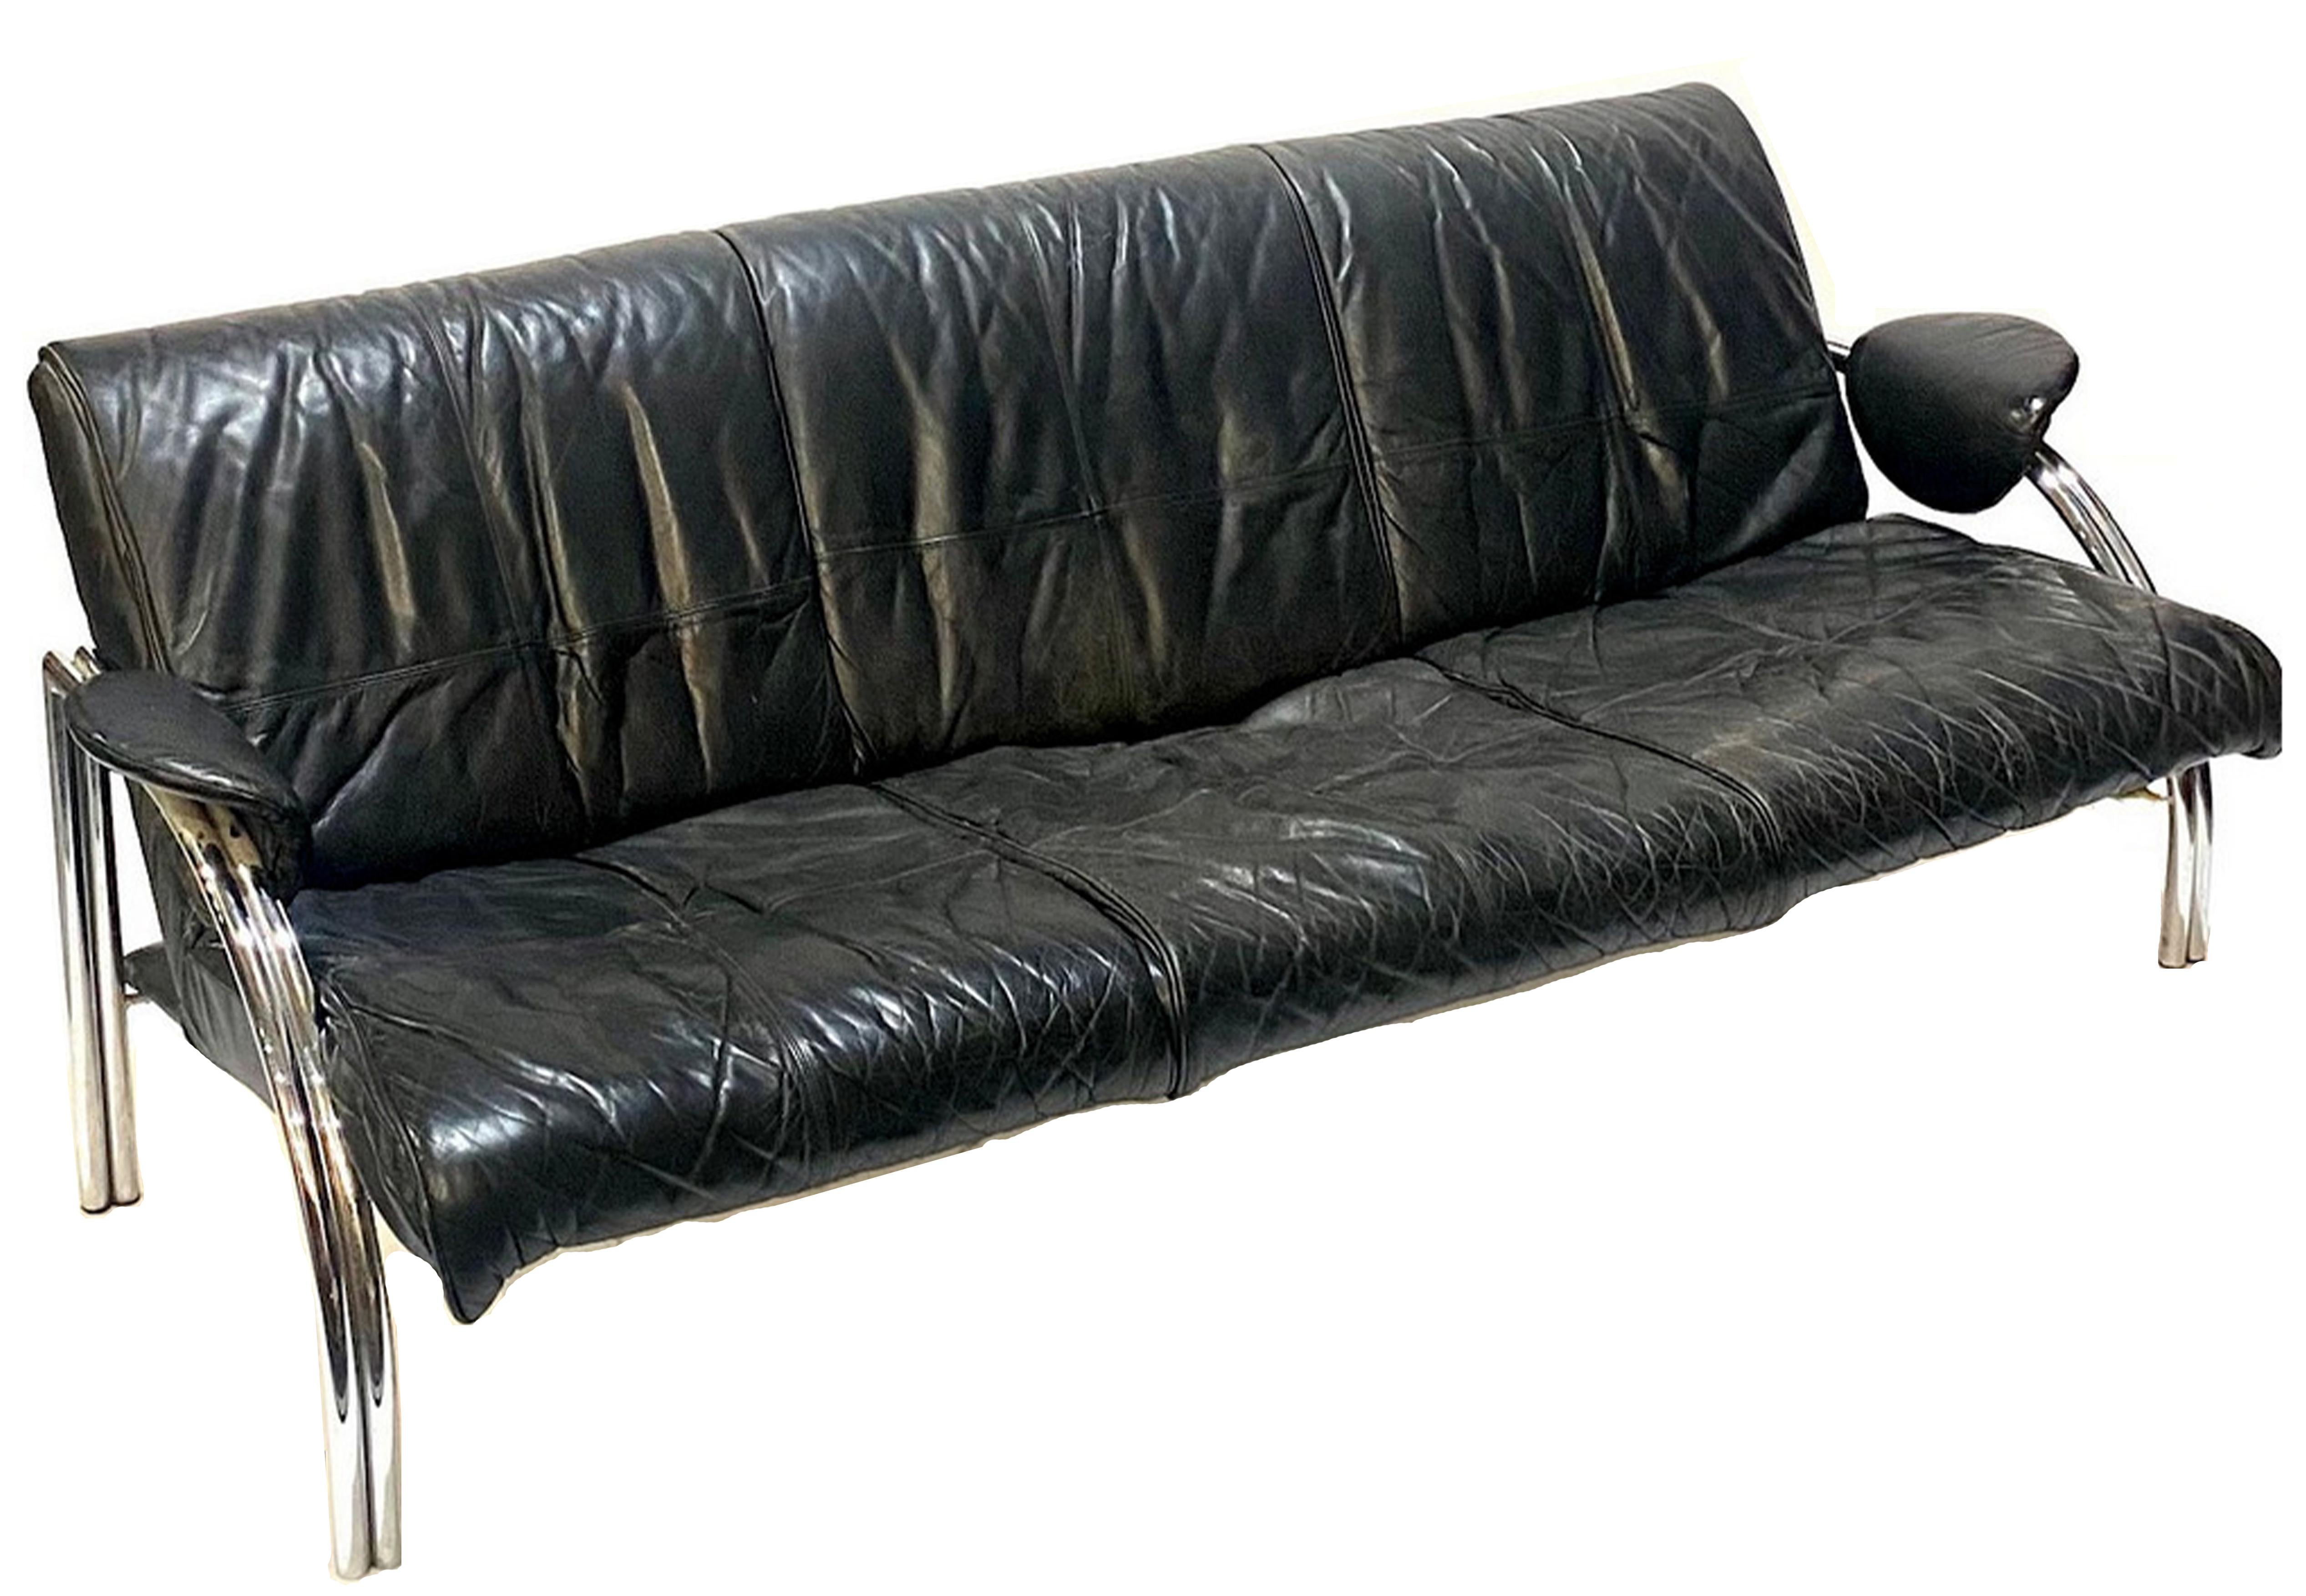 Ein seltenes Pieff & Co Art Deco Stil Schwarzes Leder und verchromt Stahlrohr gerahmt Dreisitzer Sofa 1970's Designed by Mark Lawson

Zusätzliche Bilder von Originalentwürfen, die nicht mit dem Sofa geliefert werden. 